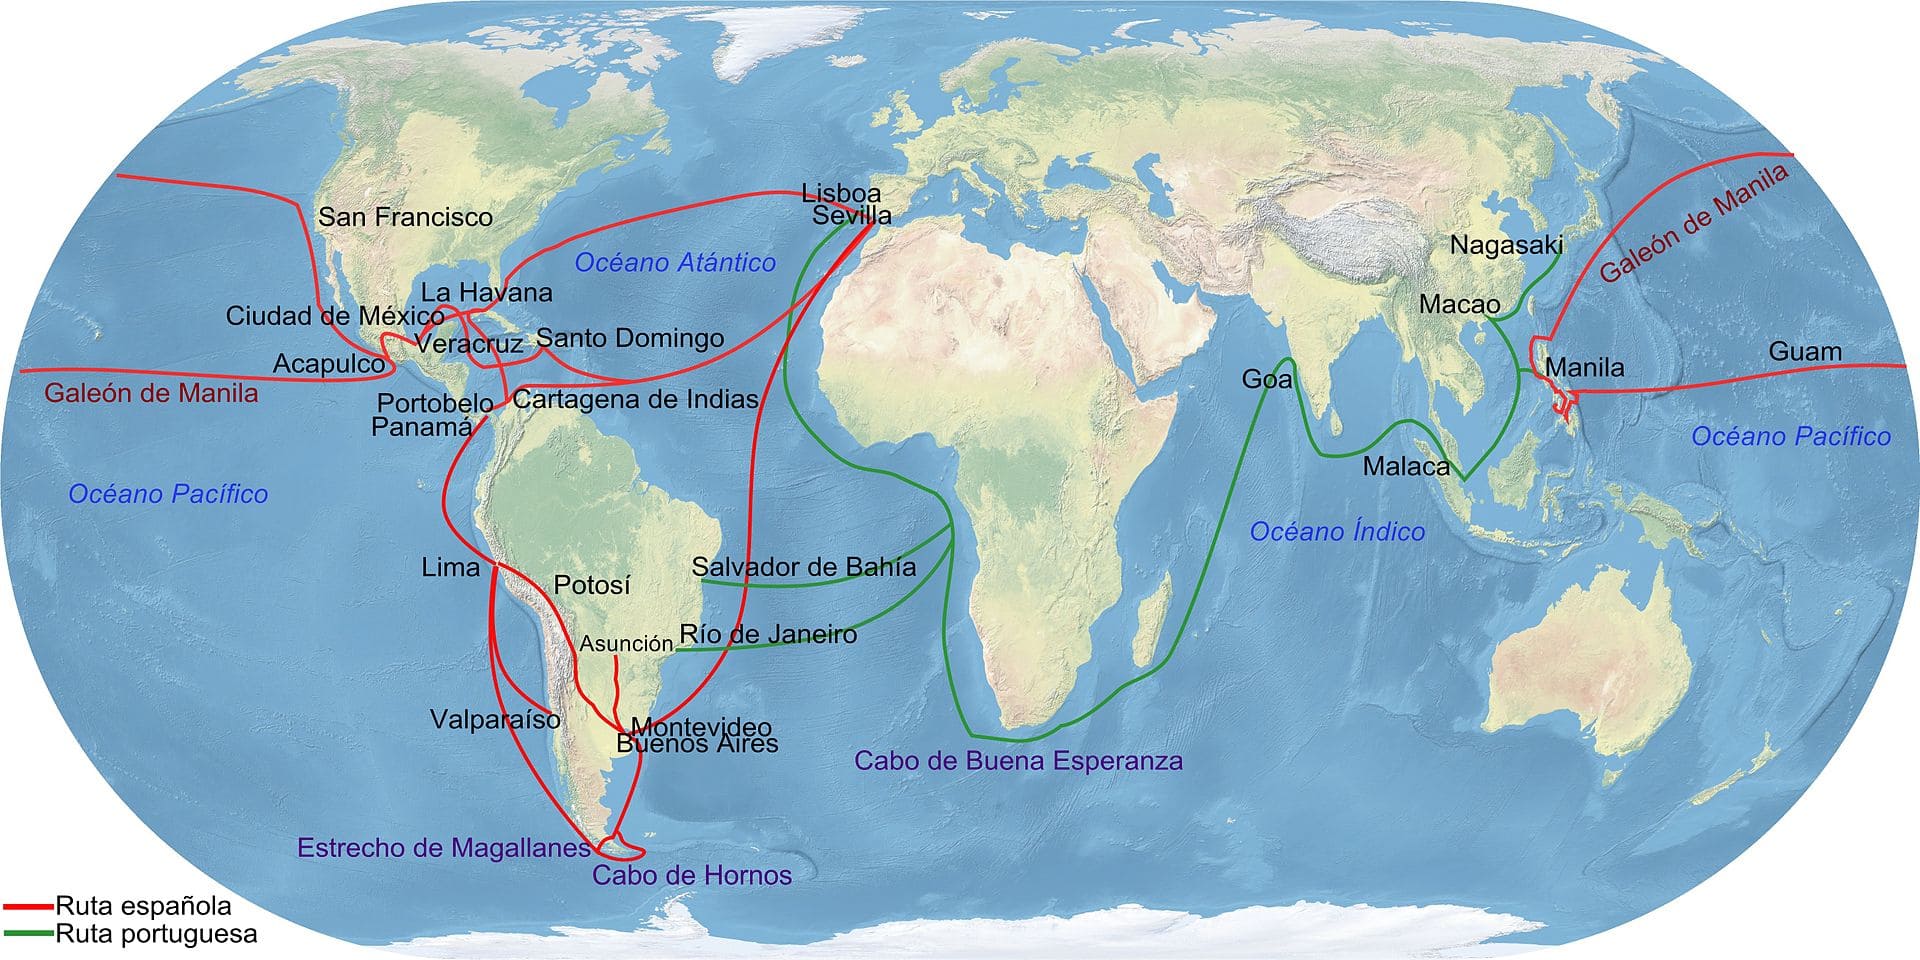 Principales rutas comerciales de las rutas españolas y portuguesas. La Flota de Indias estuvo activa del s.XVI al s.XVIII